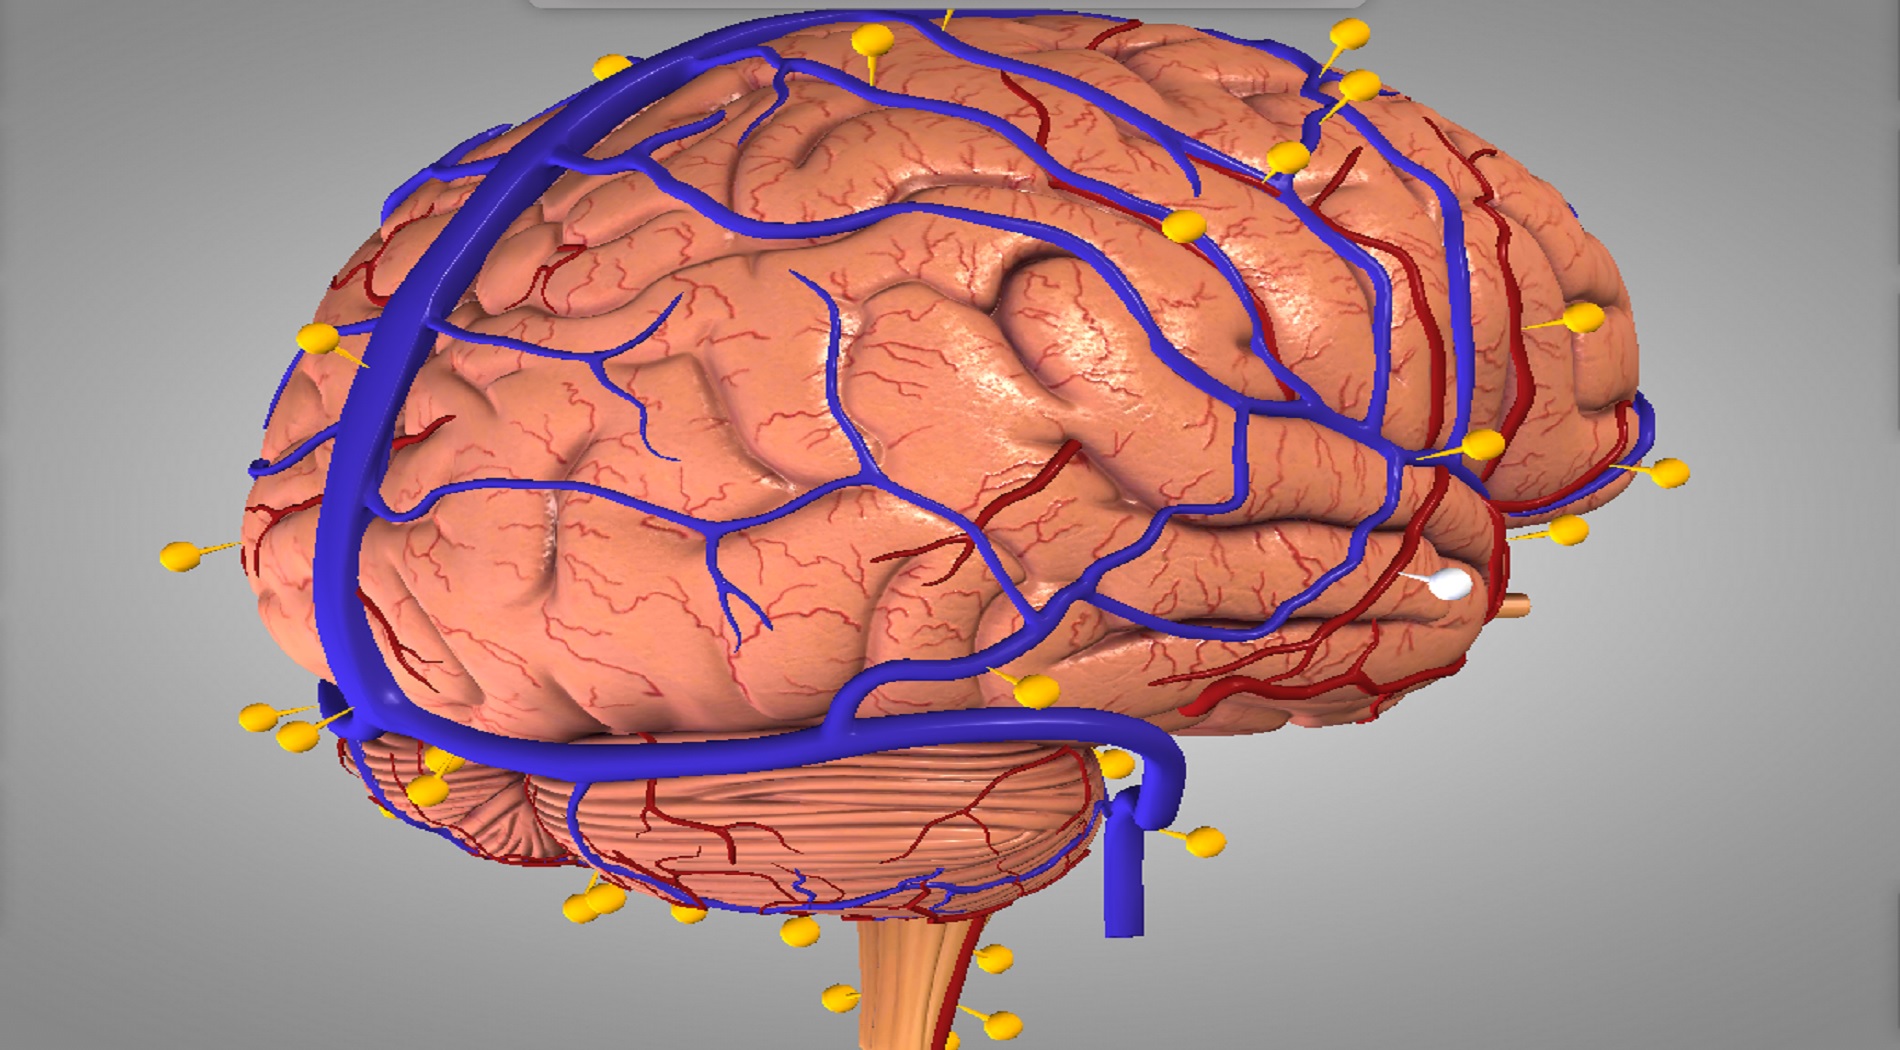 Νέα τεχνολογία πετυχαίνει πιστότερη απεικόνιση του ανθρώπινου εγκεφάλου